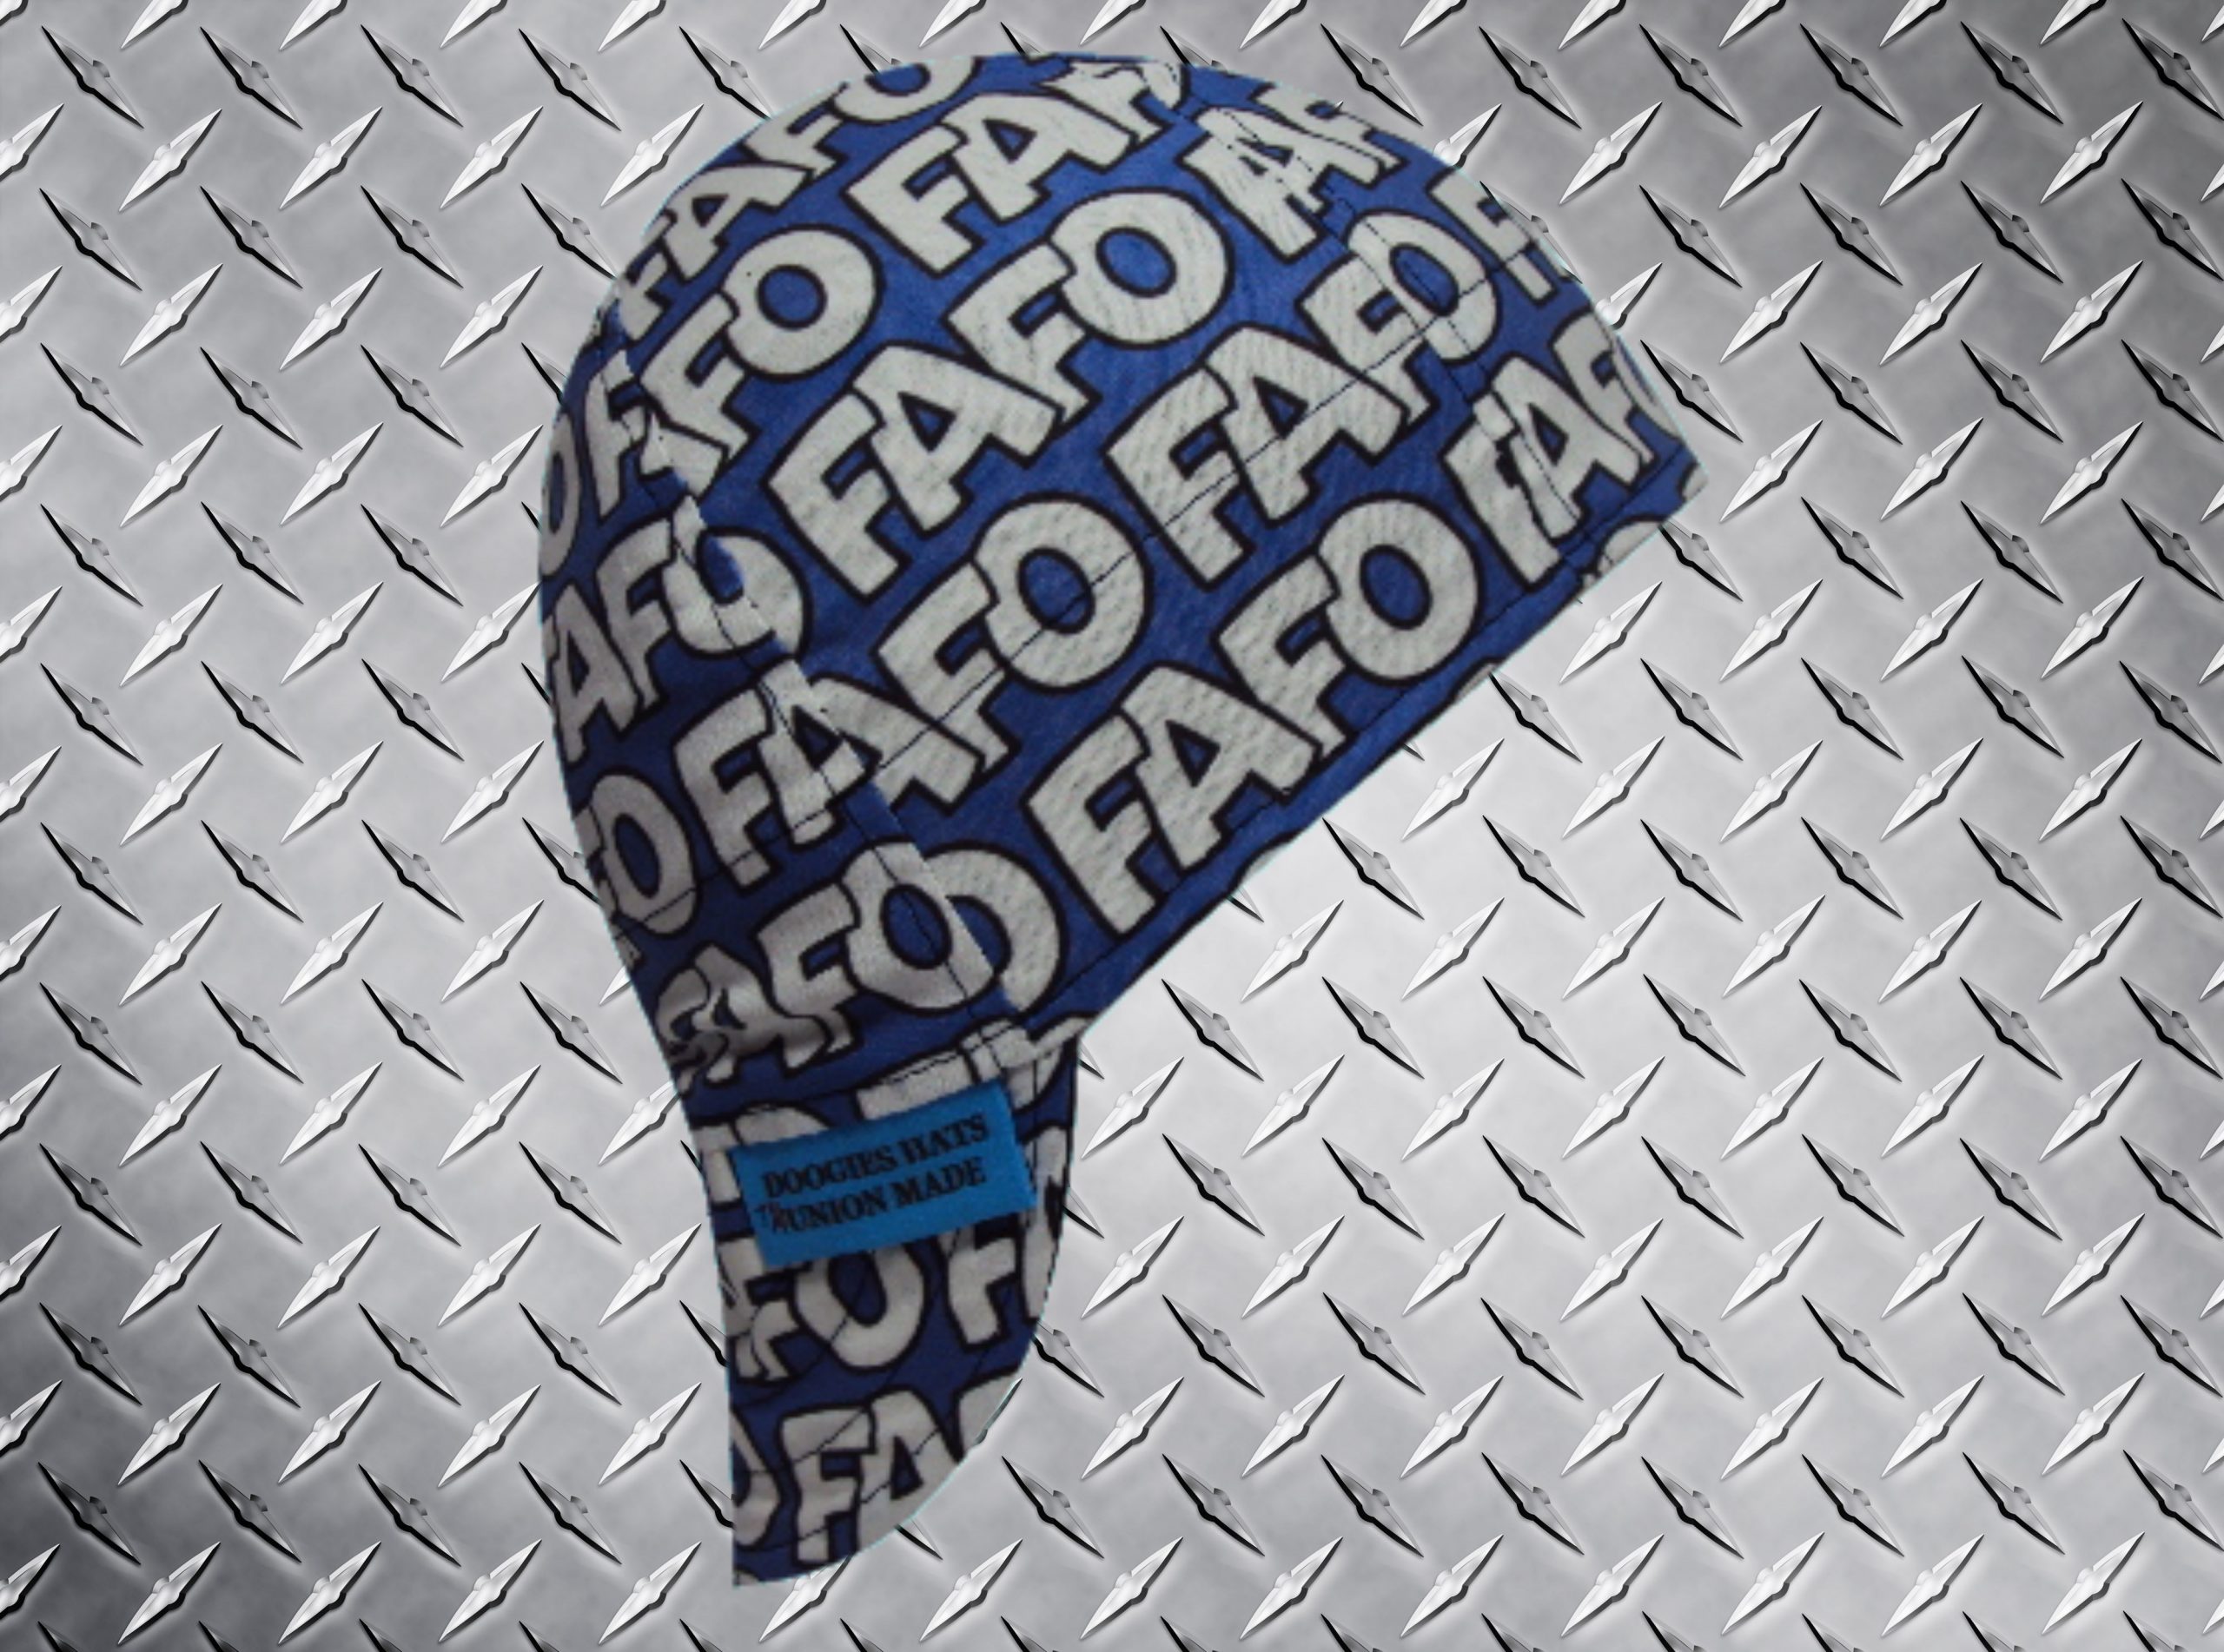 FAFO Blue Welding Hat